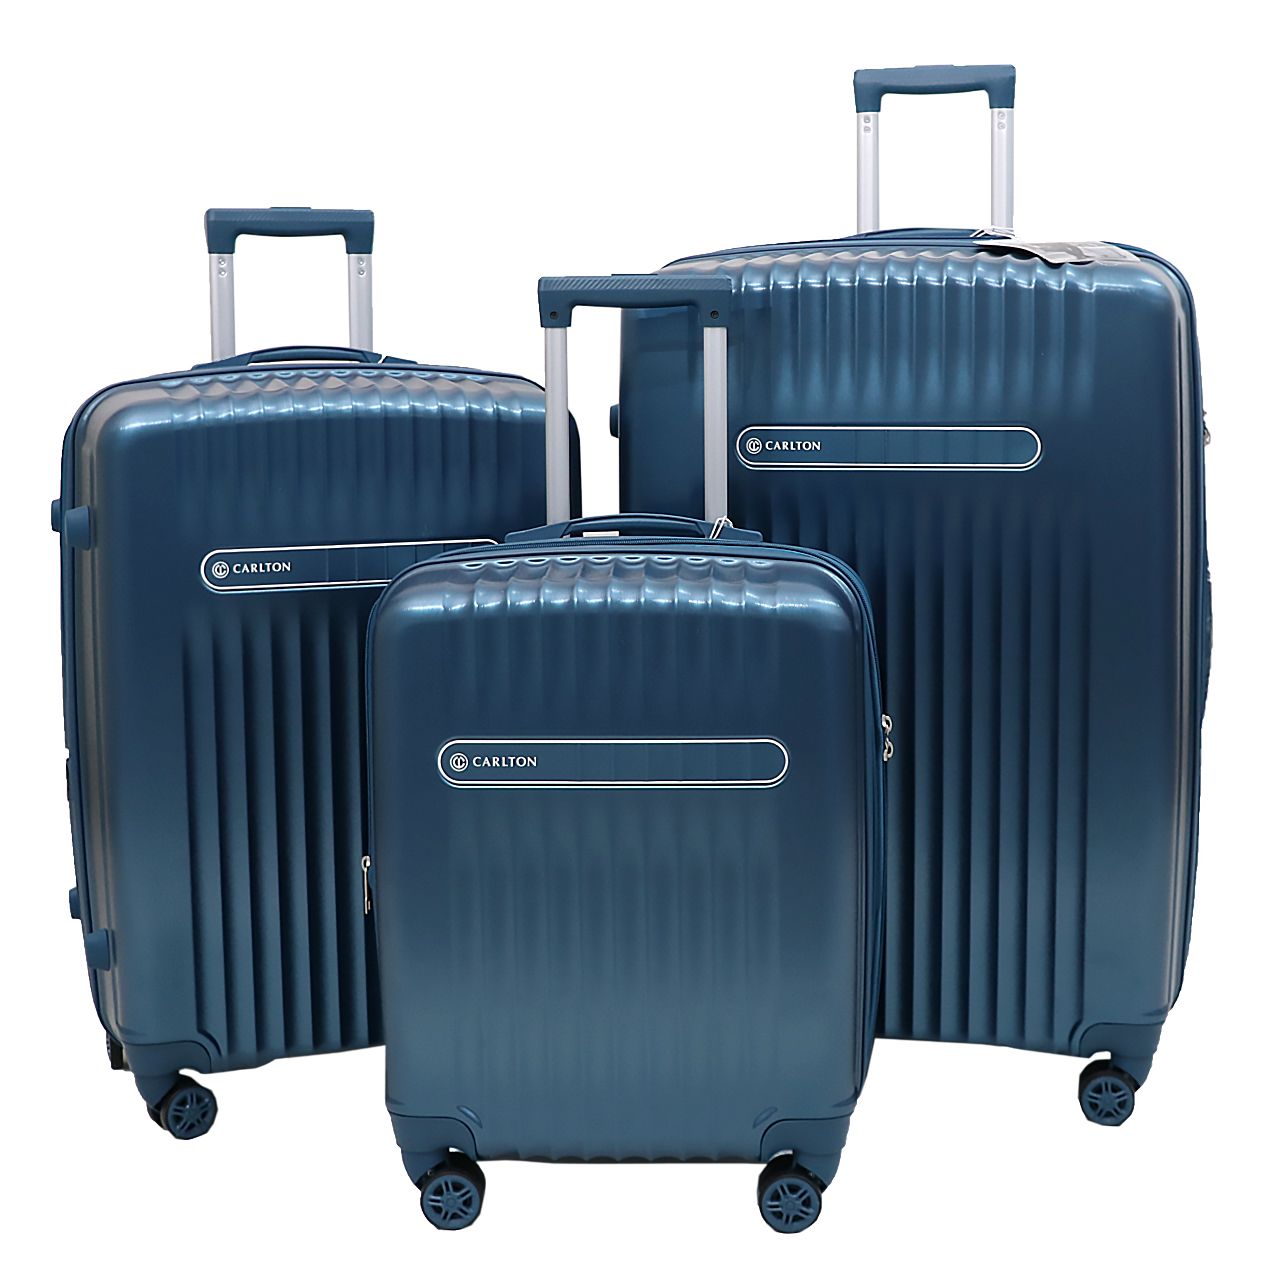 مجموعه سه عددی چمدان کارلتون مدل MERIDIAN مردیان -  - 2